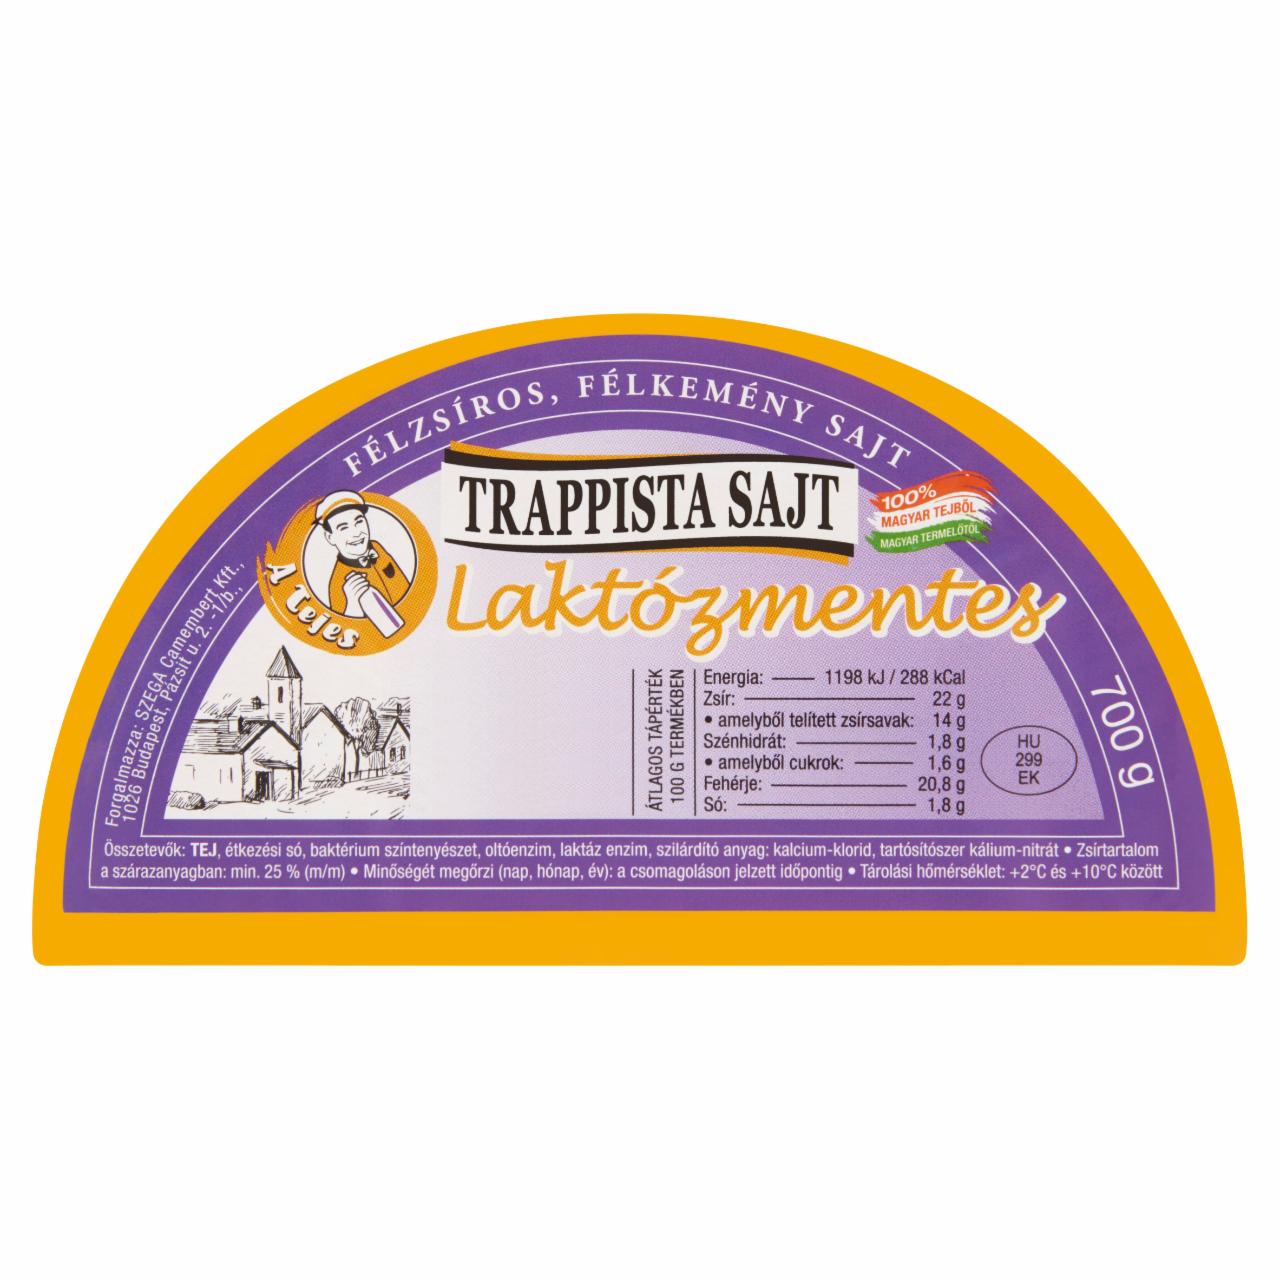 Képek - A Tejes laktózmentes félzsíros, félkemény trappista sajt 700 g